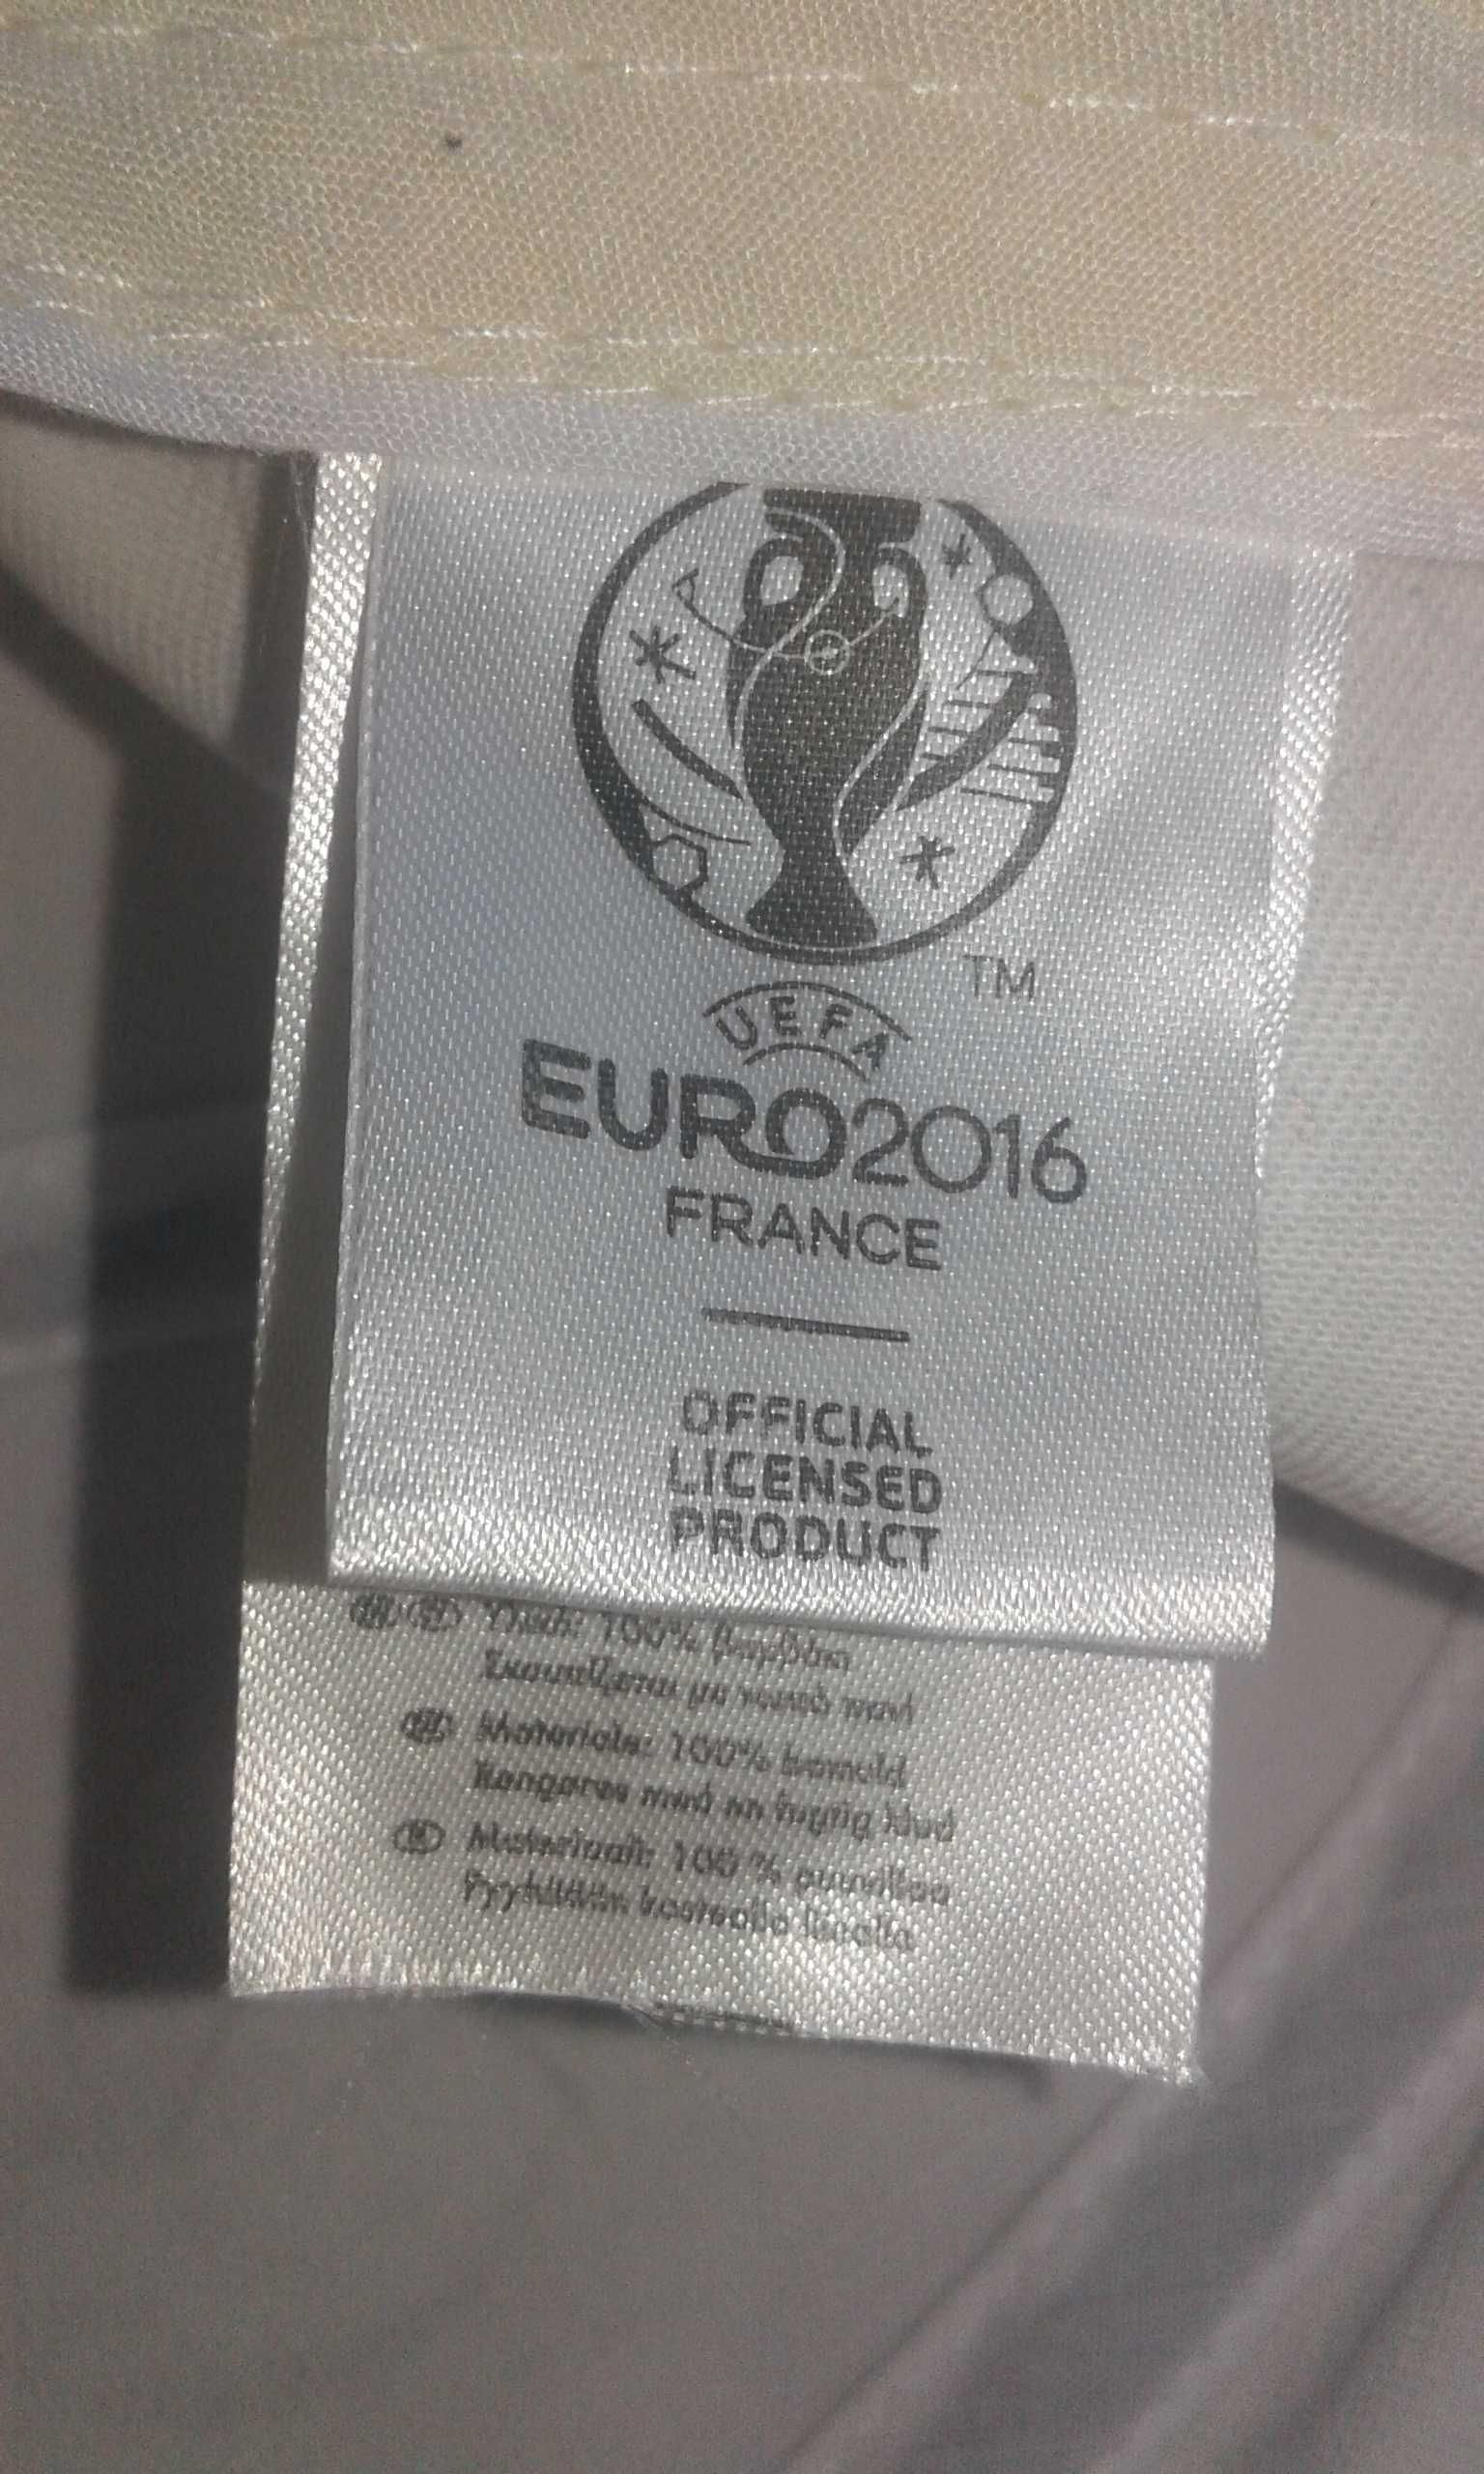 Новая брендовая кепка uefa euro 2016 France, из Франции !